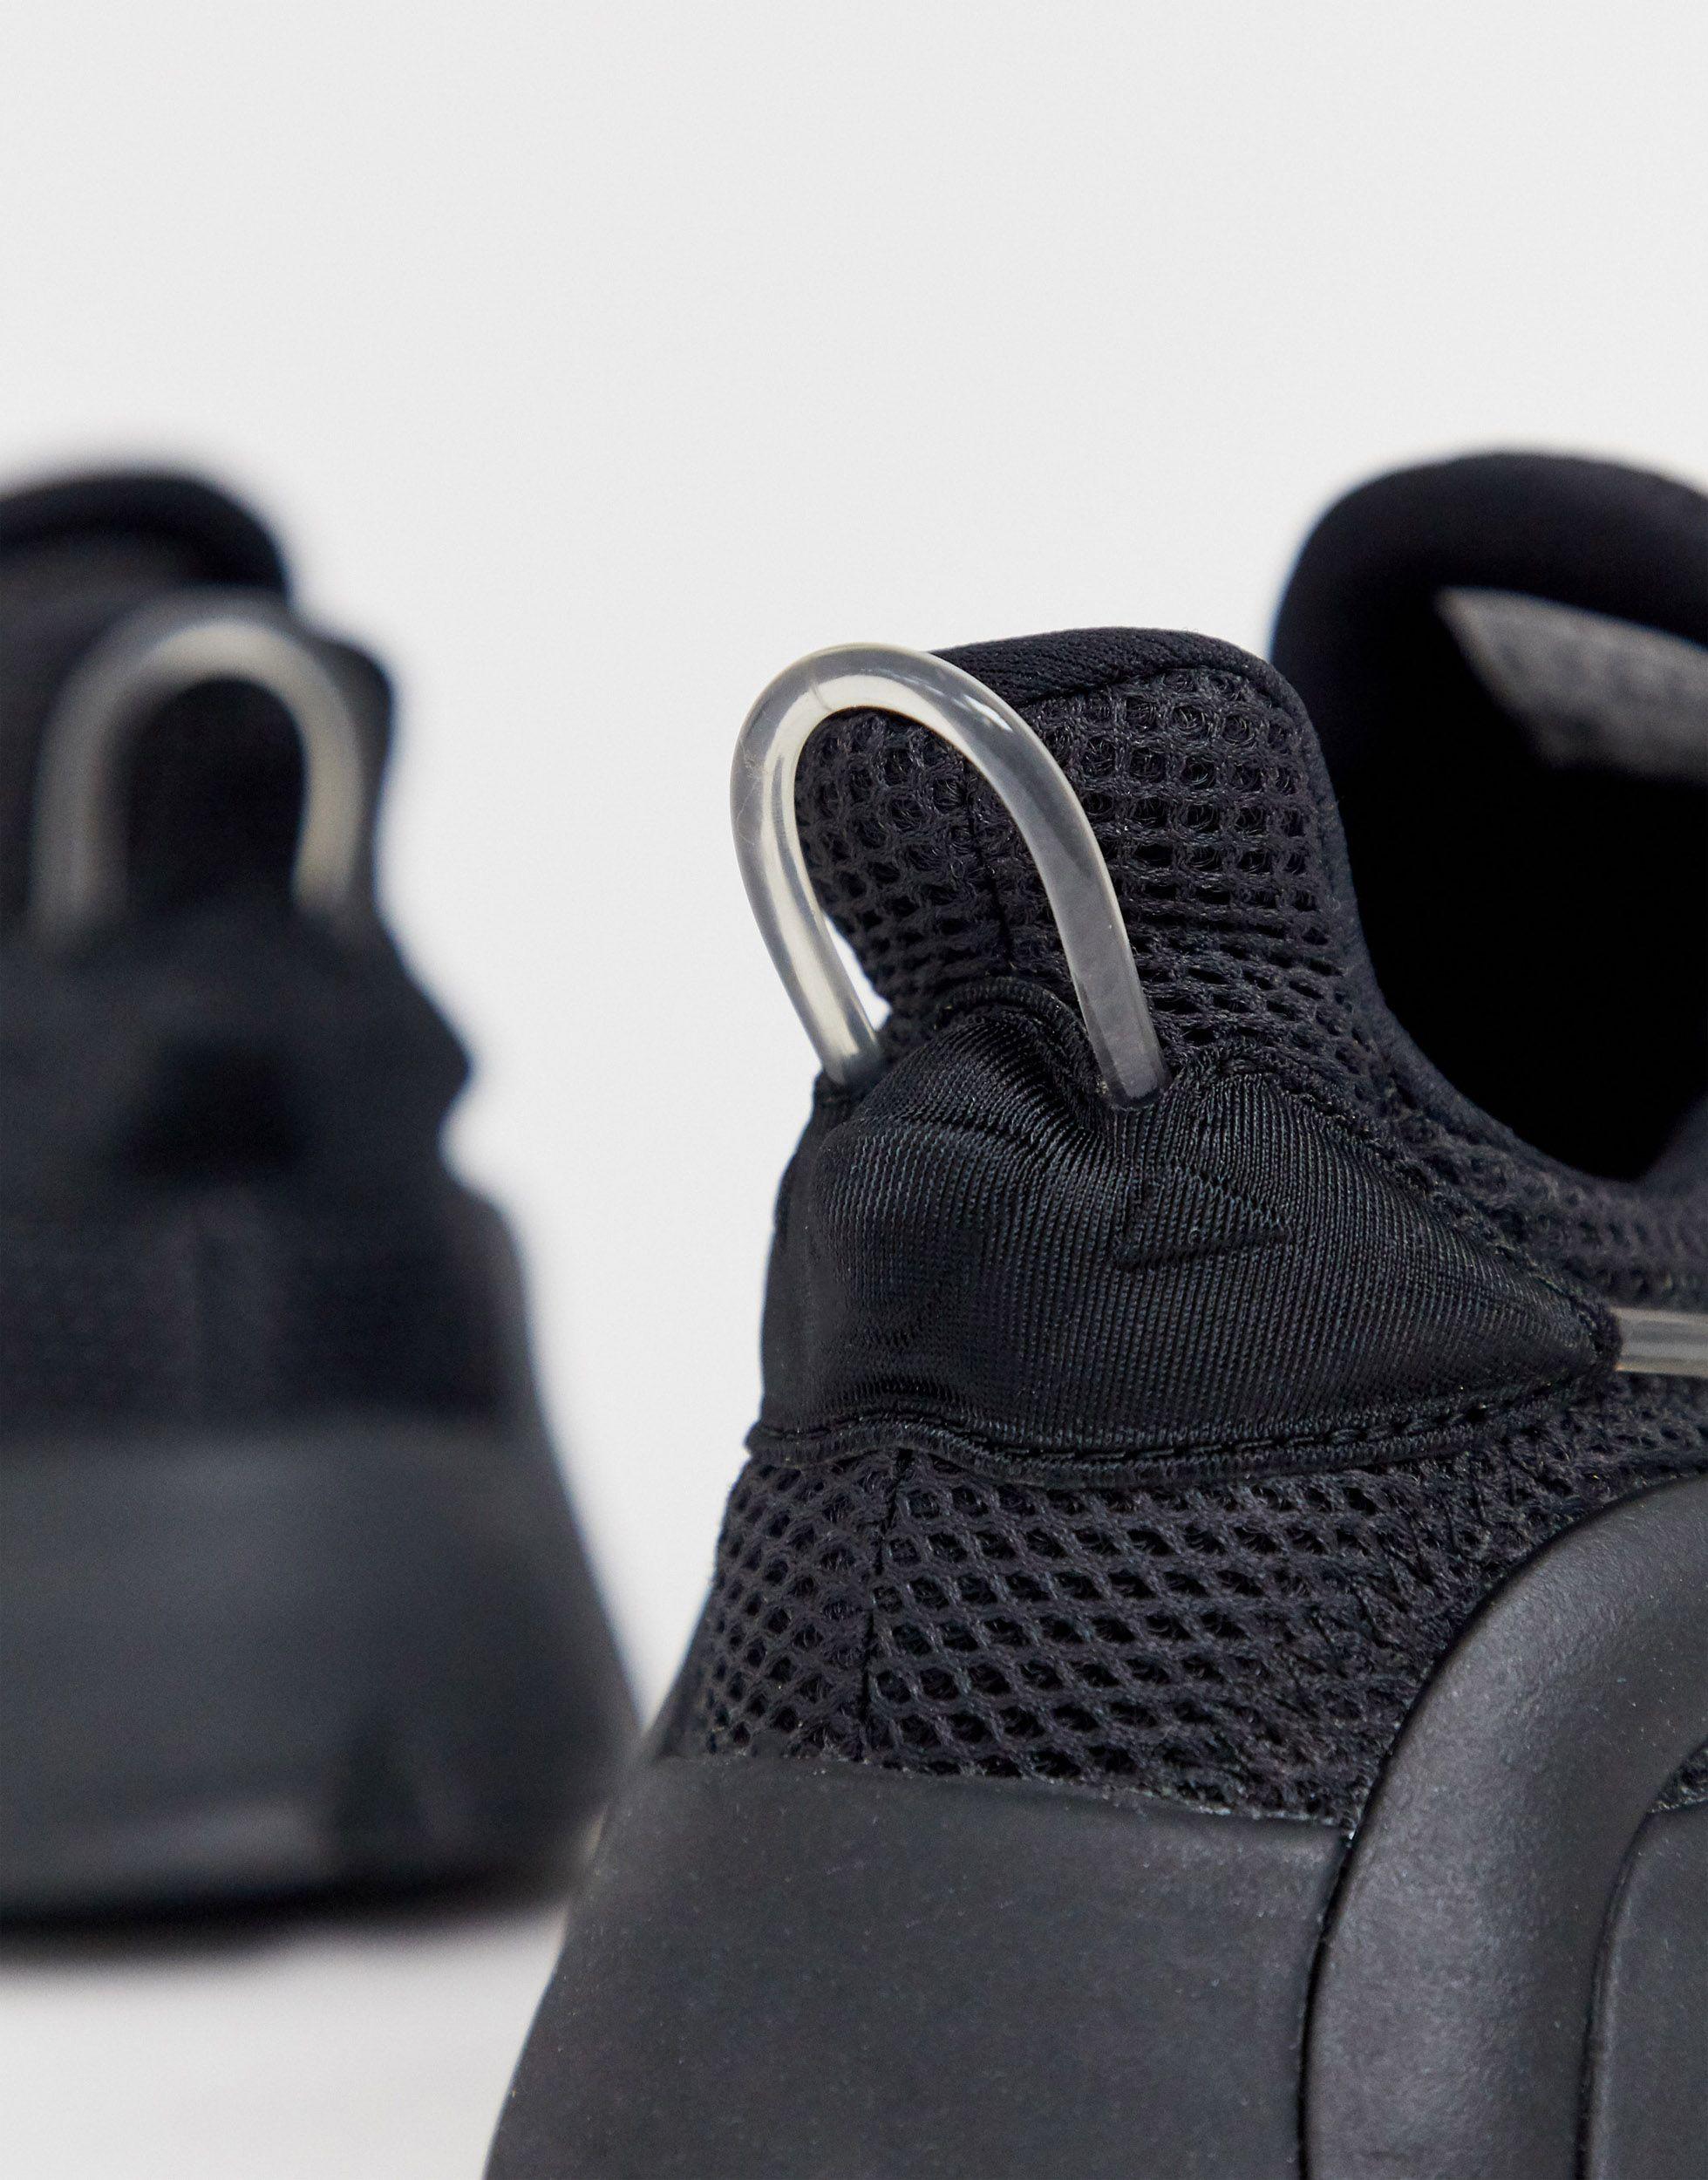 Zapatillas en triple negro LXCON Adiprene adidas Originals de hombre de  color Negro | Lyst